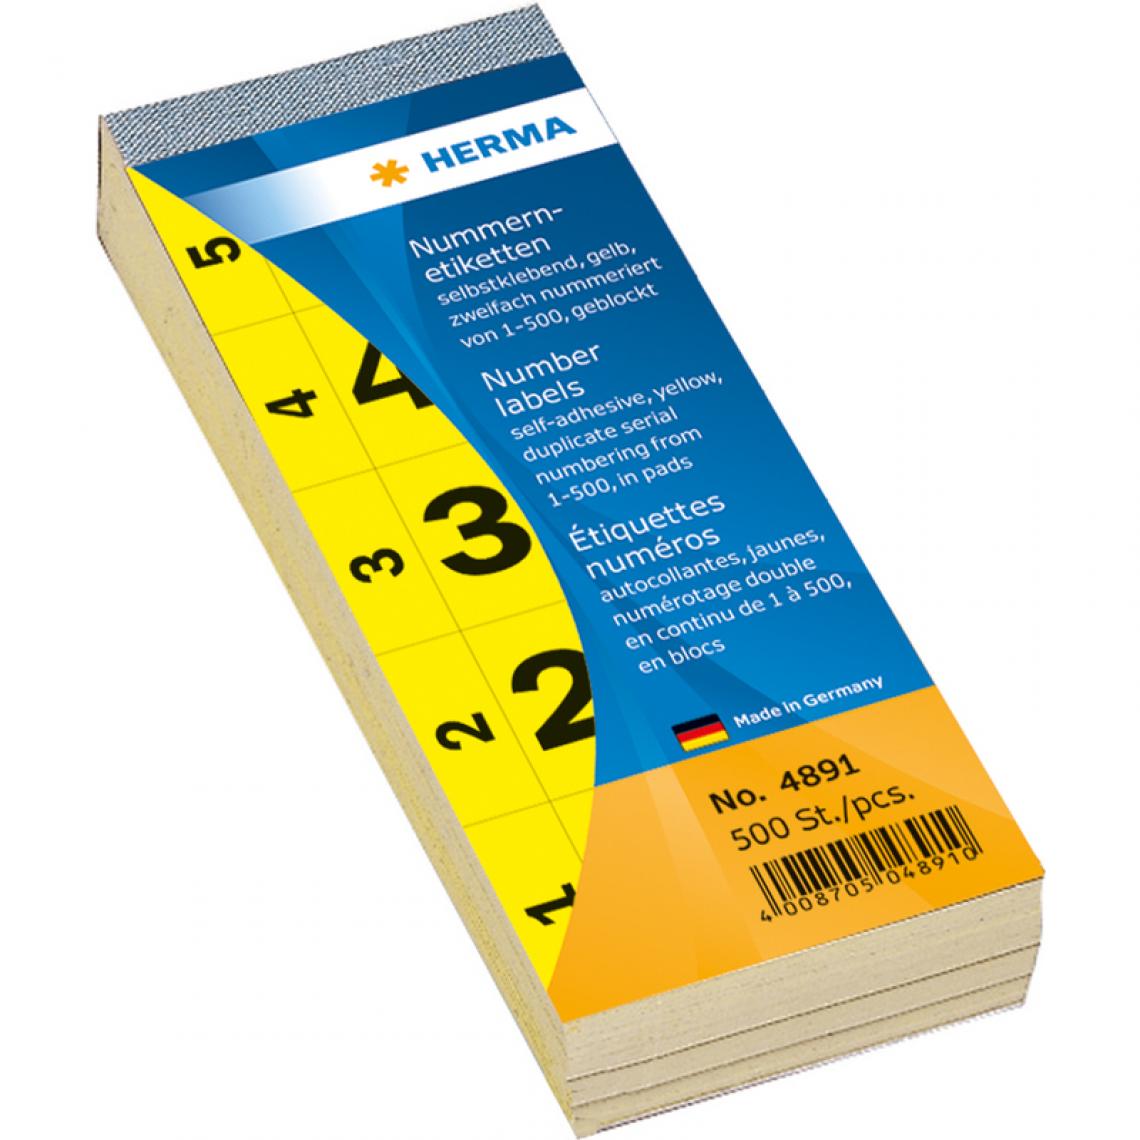 Herma - HERMA étiquettes numéros, autocollant, 28 x 56 mm, jaune () - Accessoires Bureau